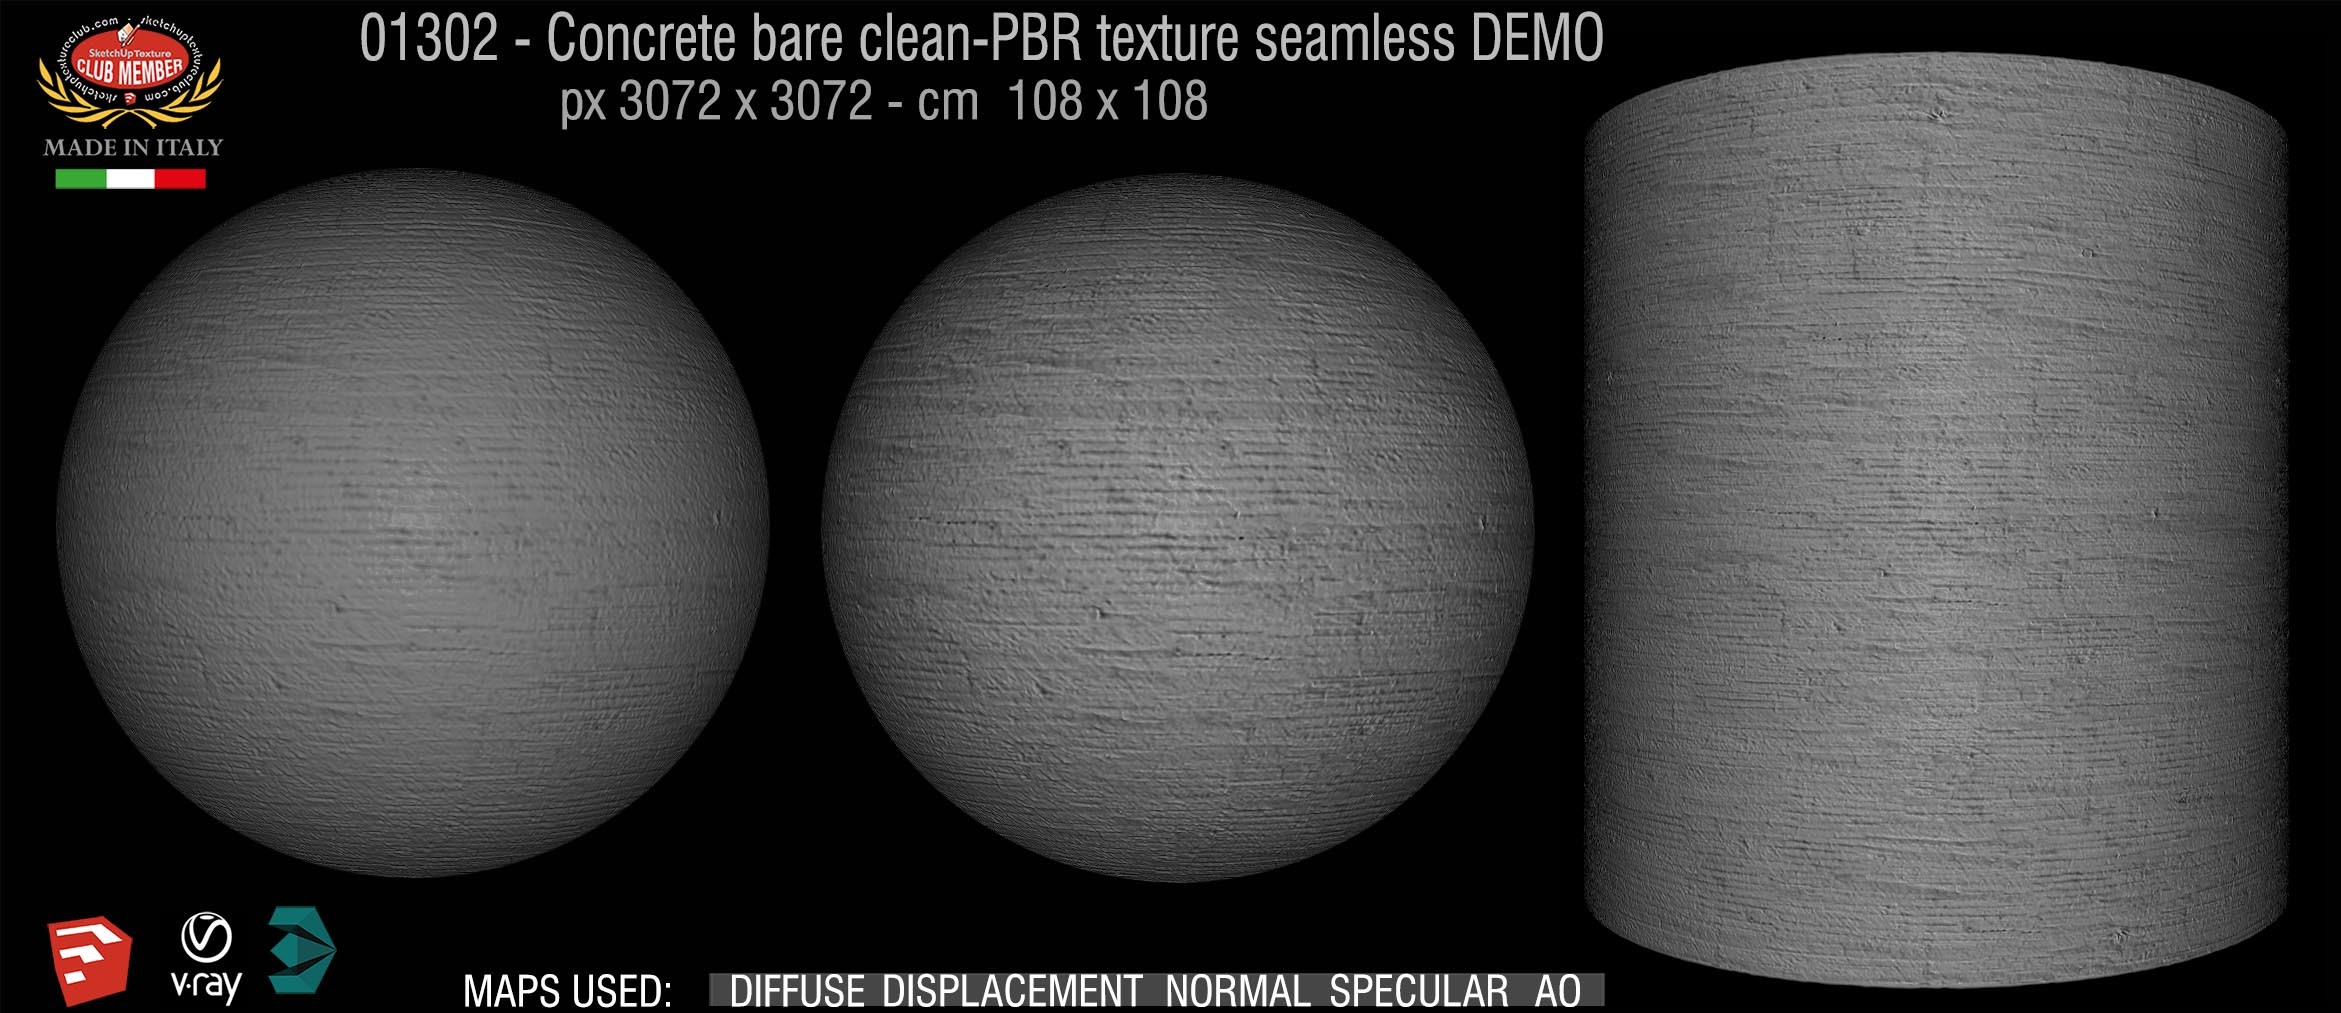 01302 Concrete bare clean-PBR texture seamless DEMO